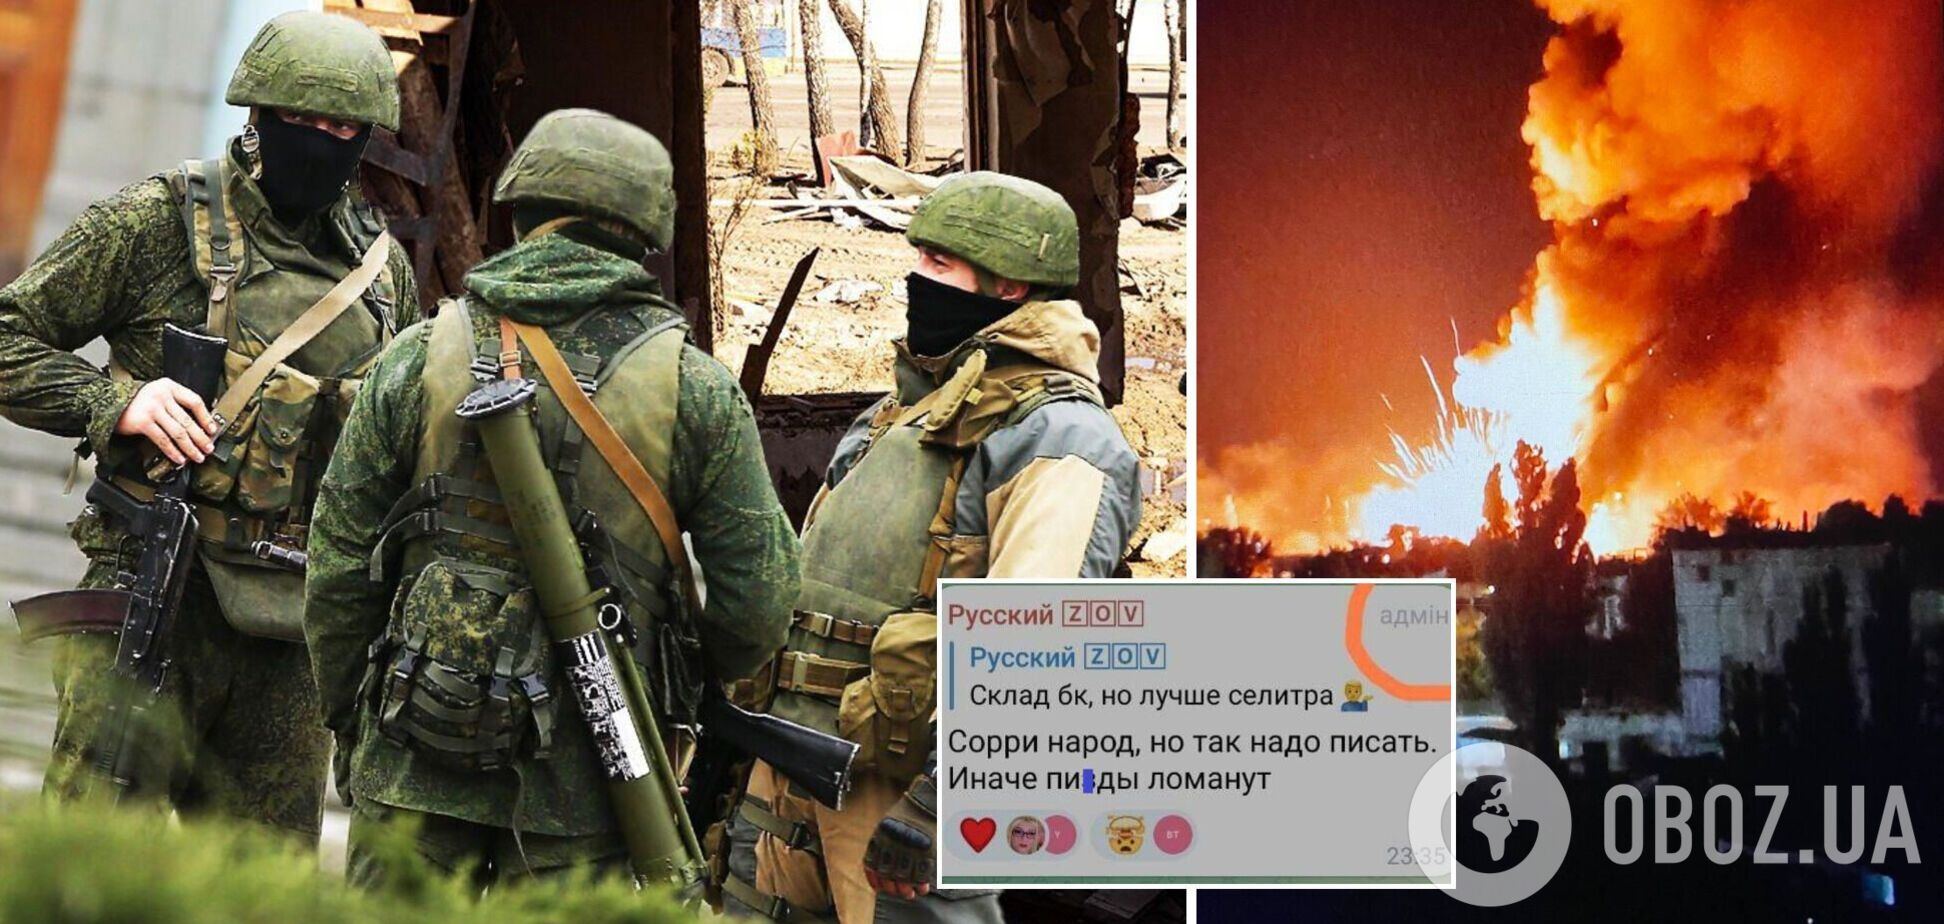 ВСУ уничтожили склад БК, но надо писать 'селитру': пропагандист признался во лжи РФ о взрывах в Новой Каховке